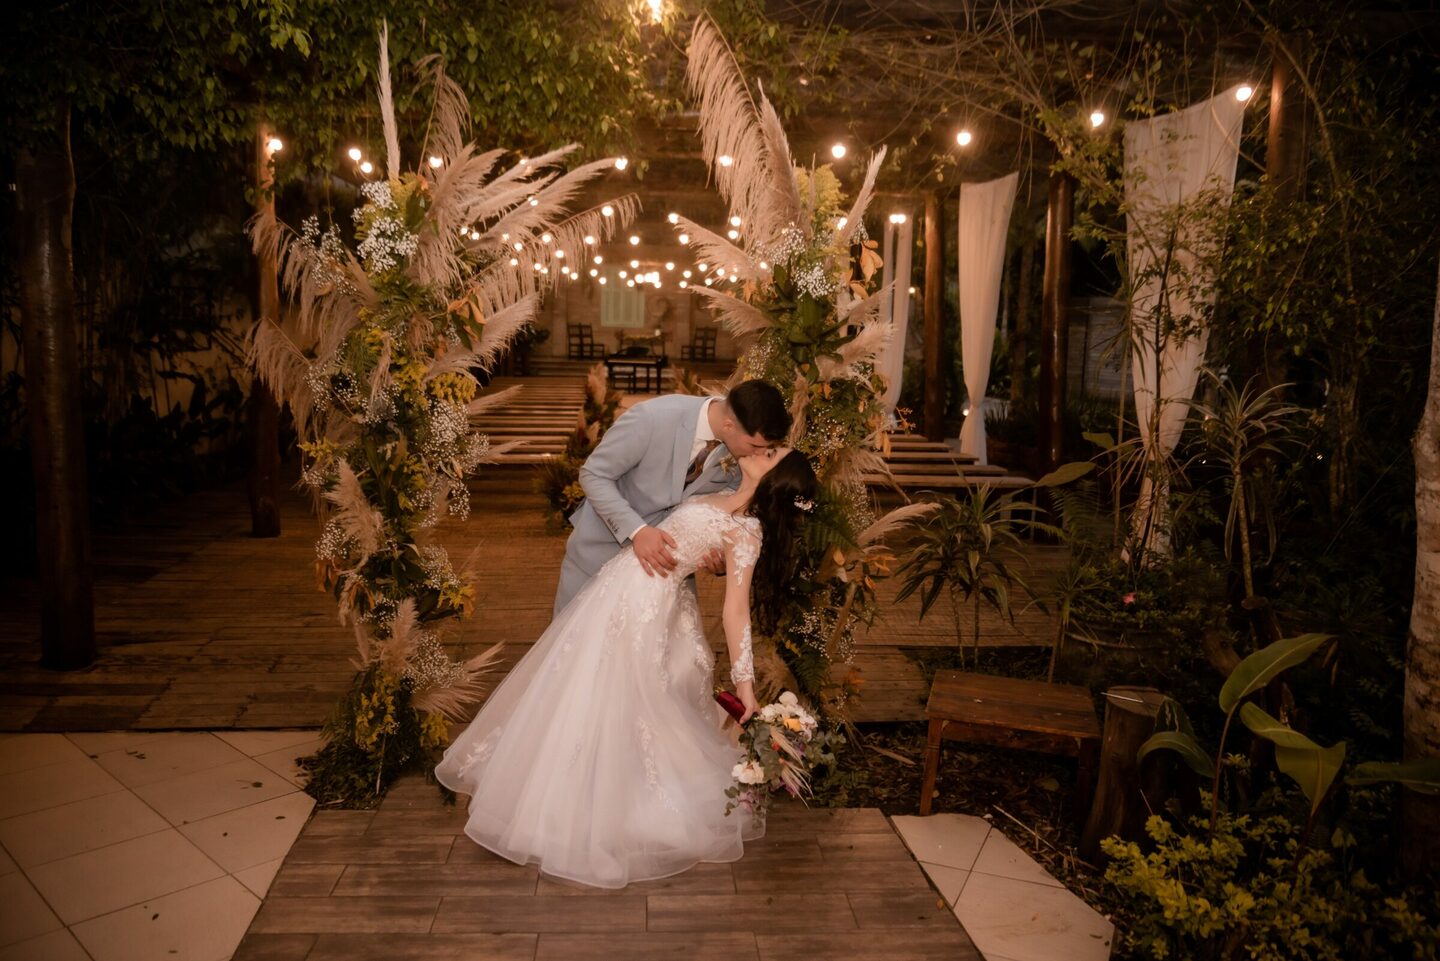 "Instantes de felicidade: Fotos de casamento que transmitem alegria"